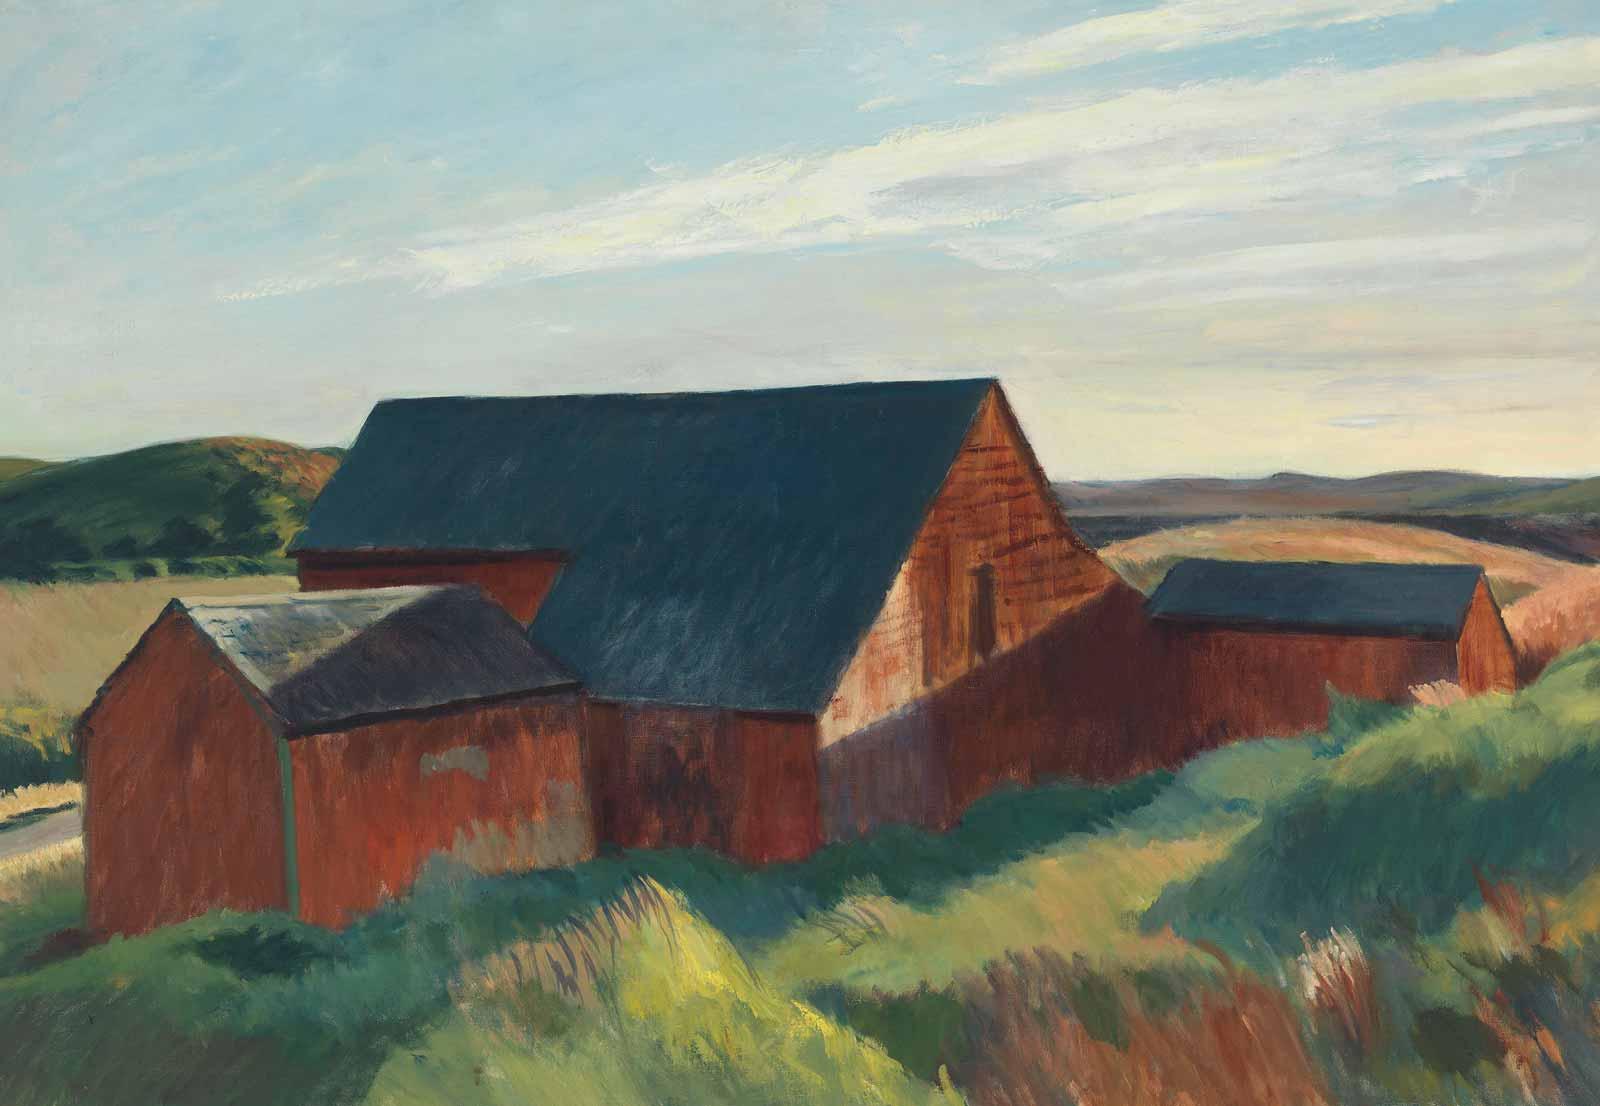 The landscapes of Edward Hopper